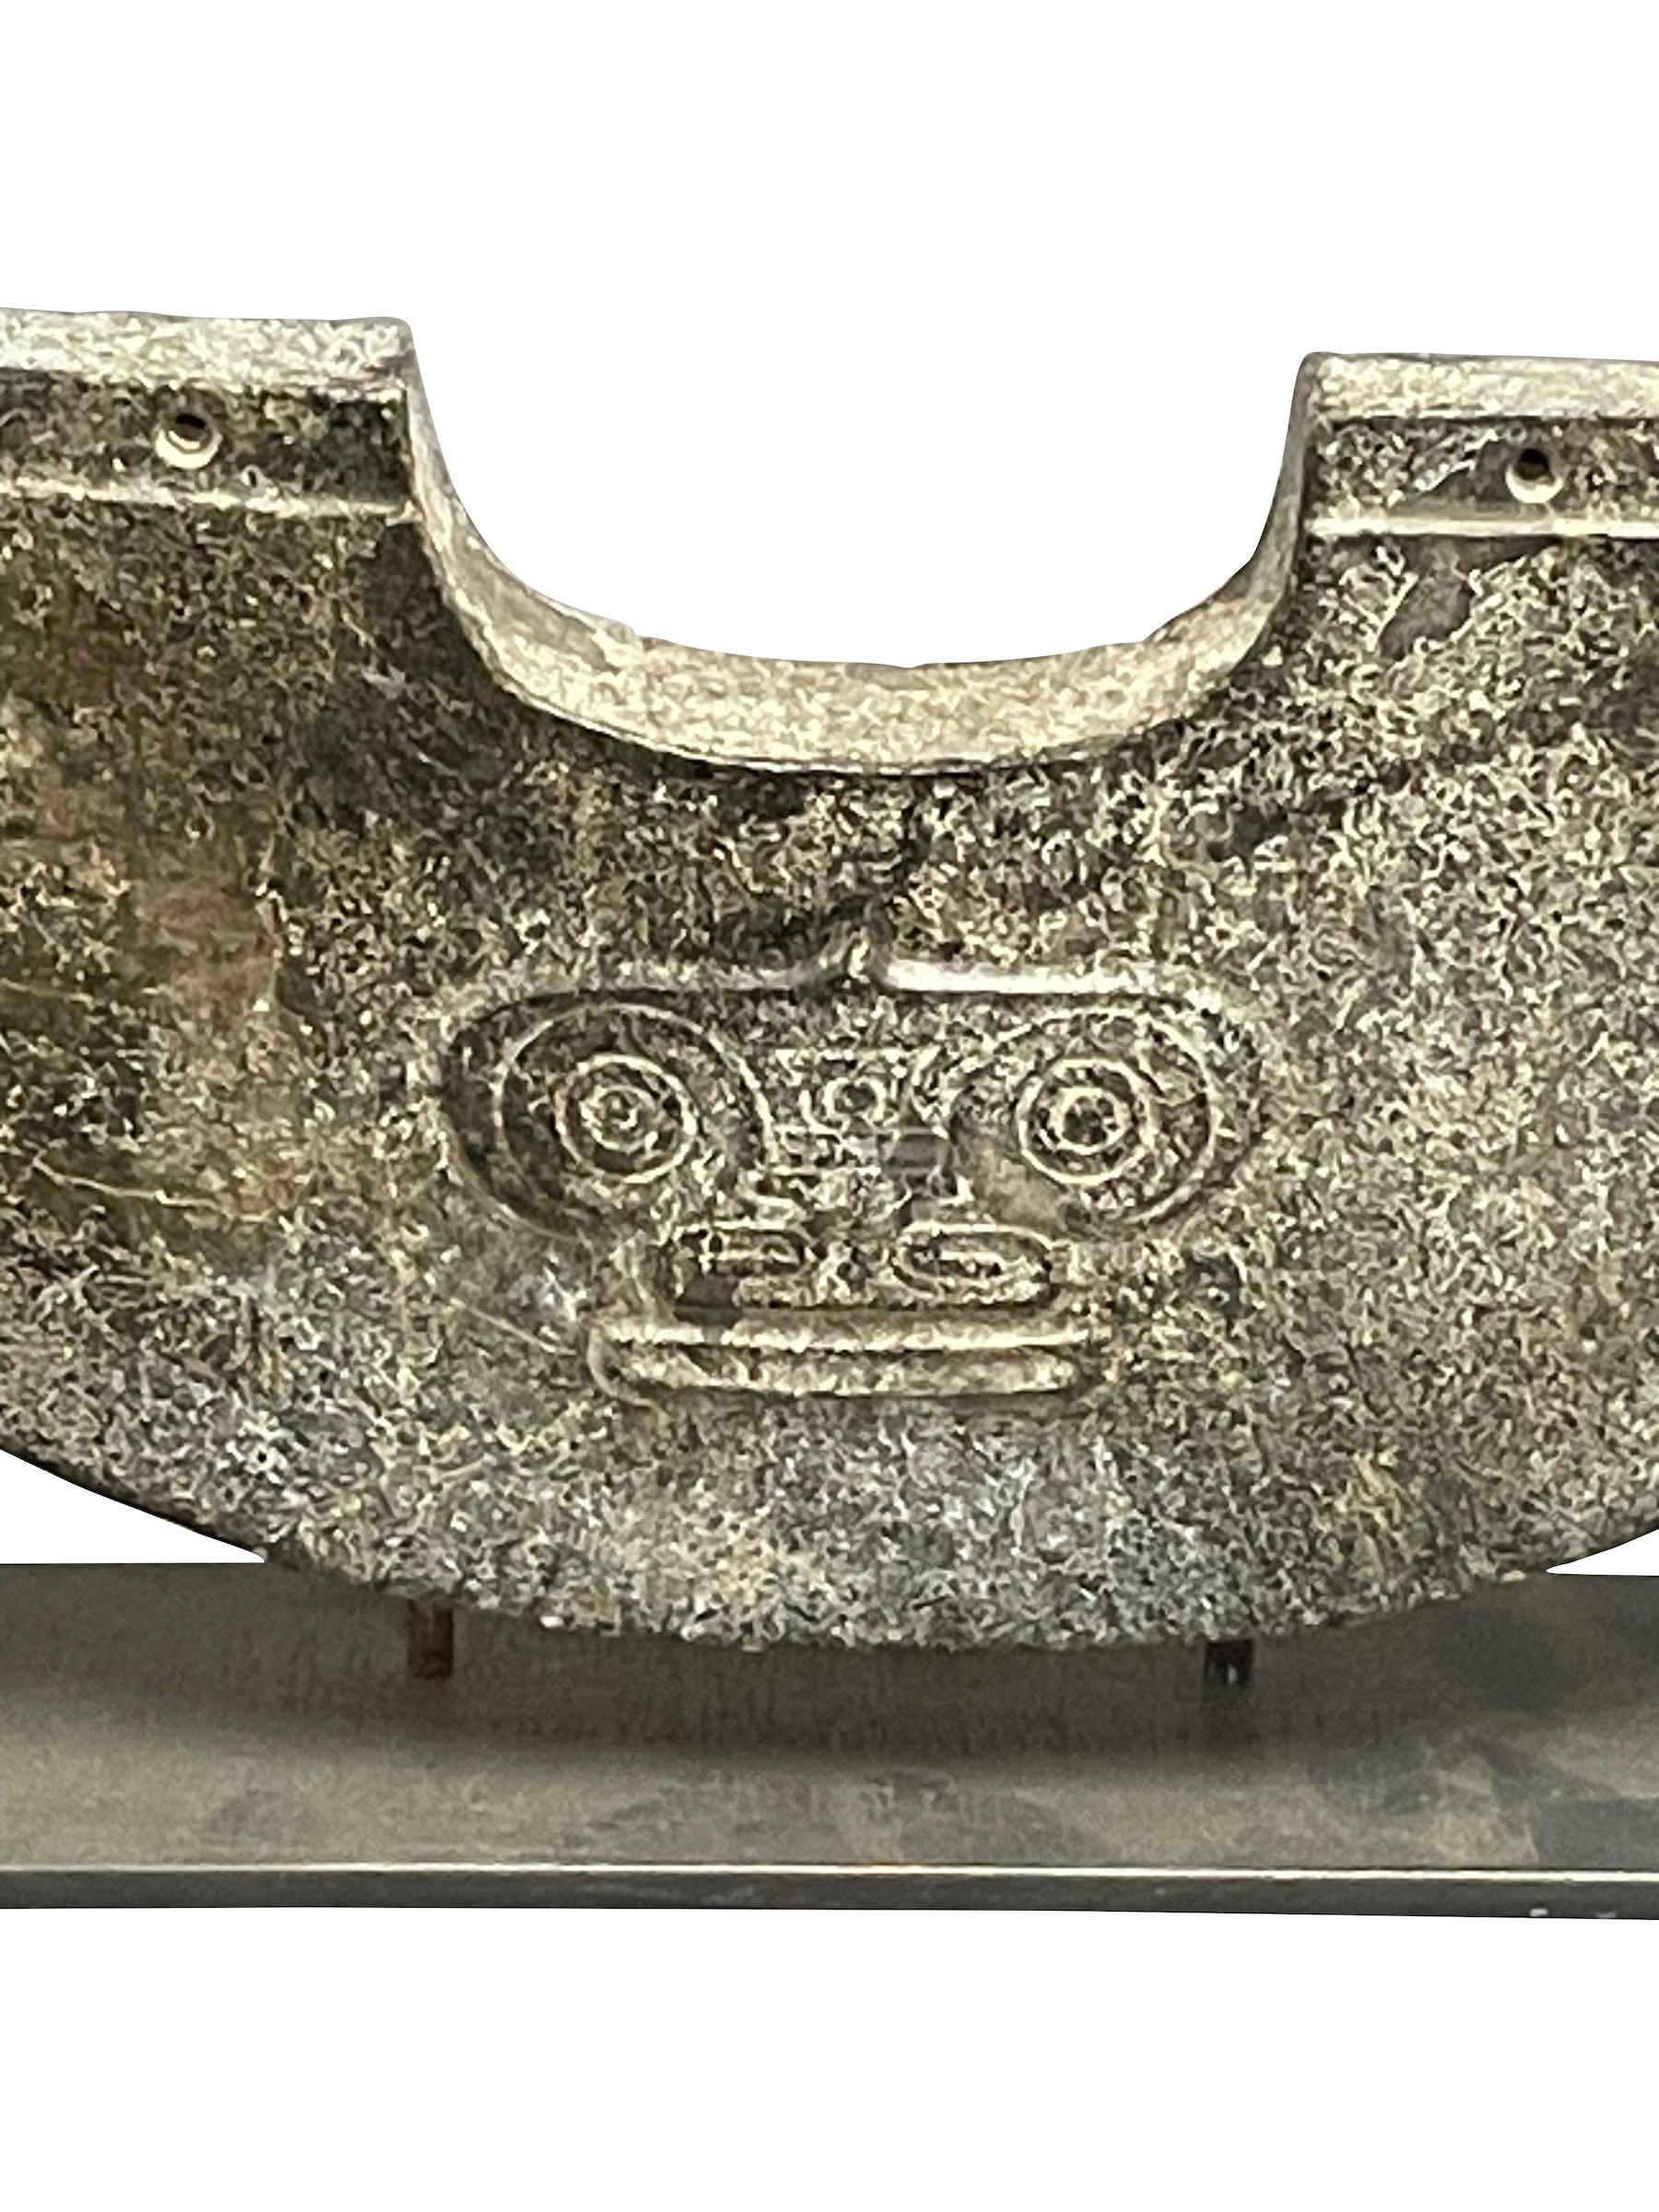 Stone Handgeschnitzte Halbkreisscheibe auf Metall Stand, China, Contemporary (Chinesisch)